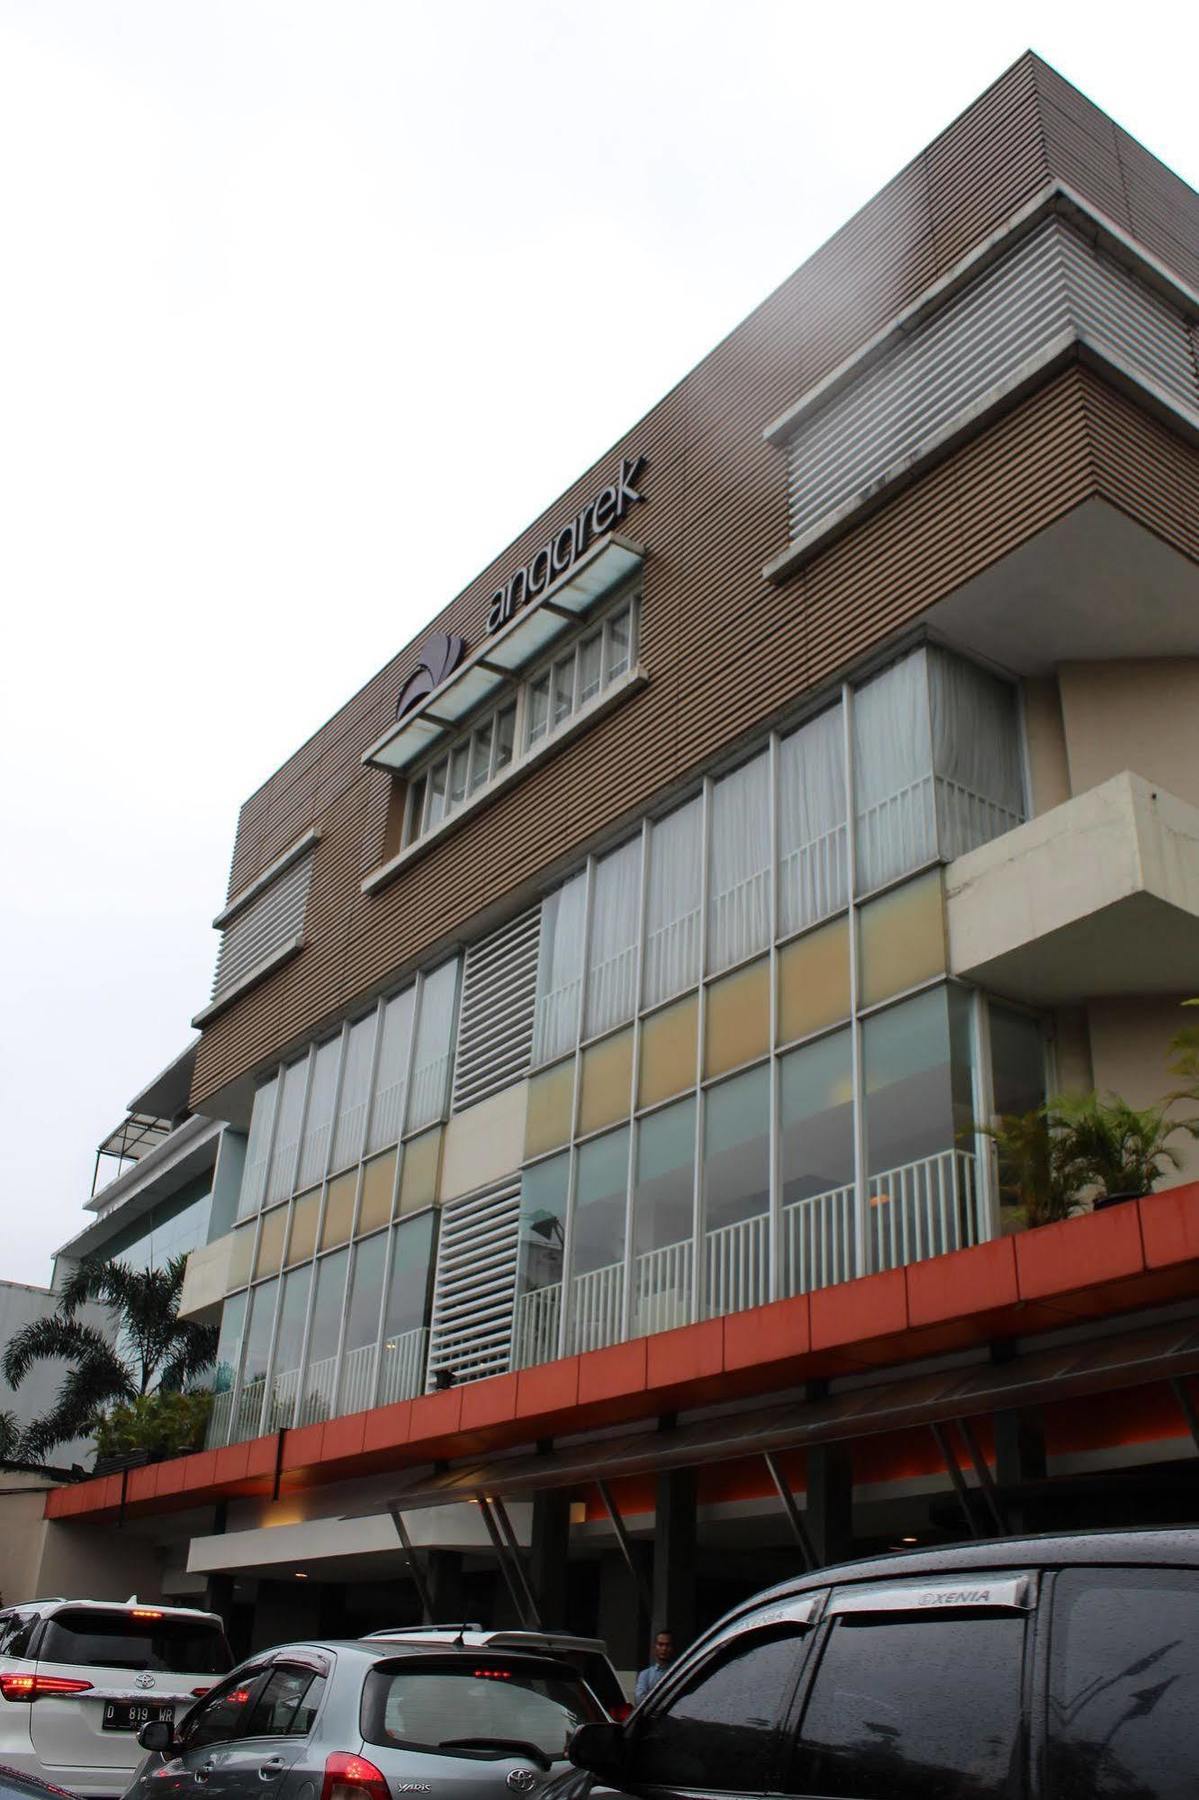 Anggrek Shopping Hotel Bandung Ngoại thất bức ảnh